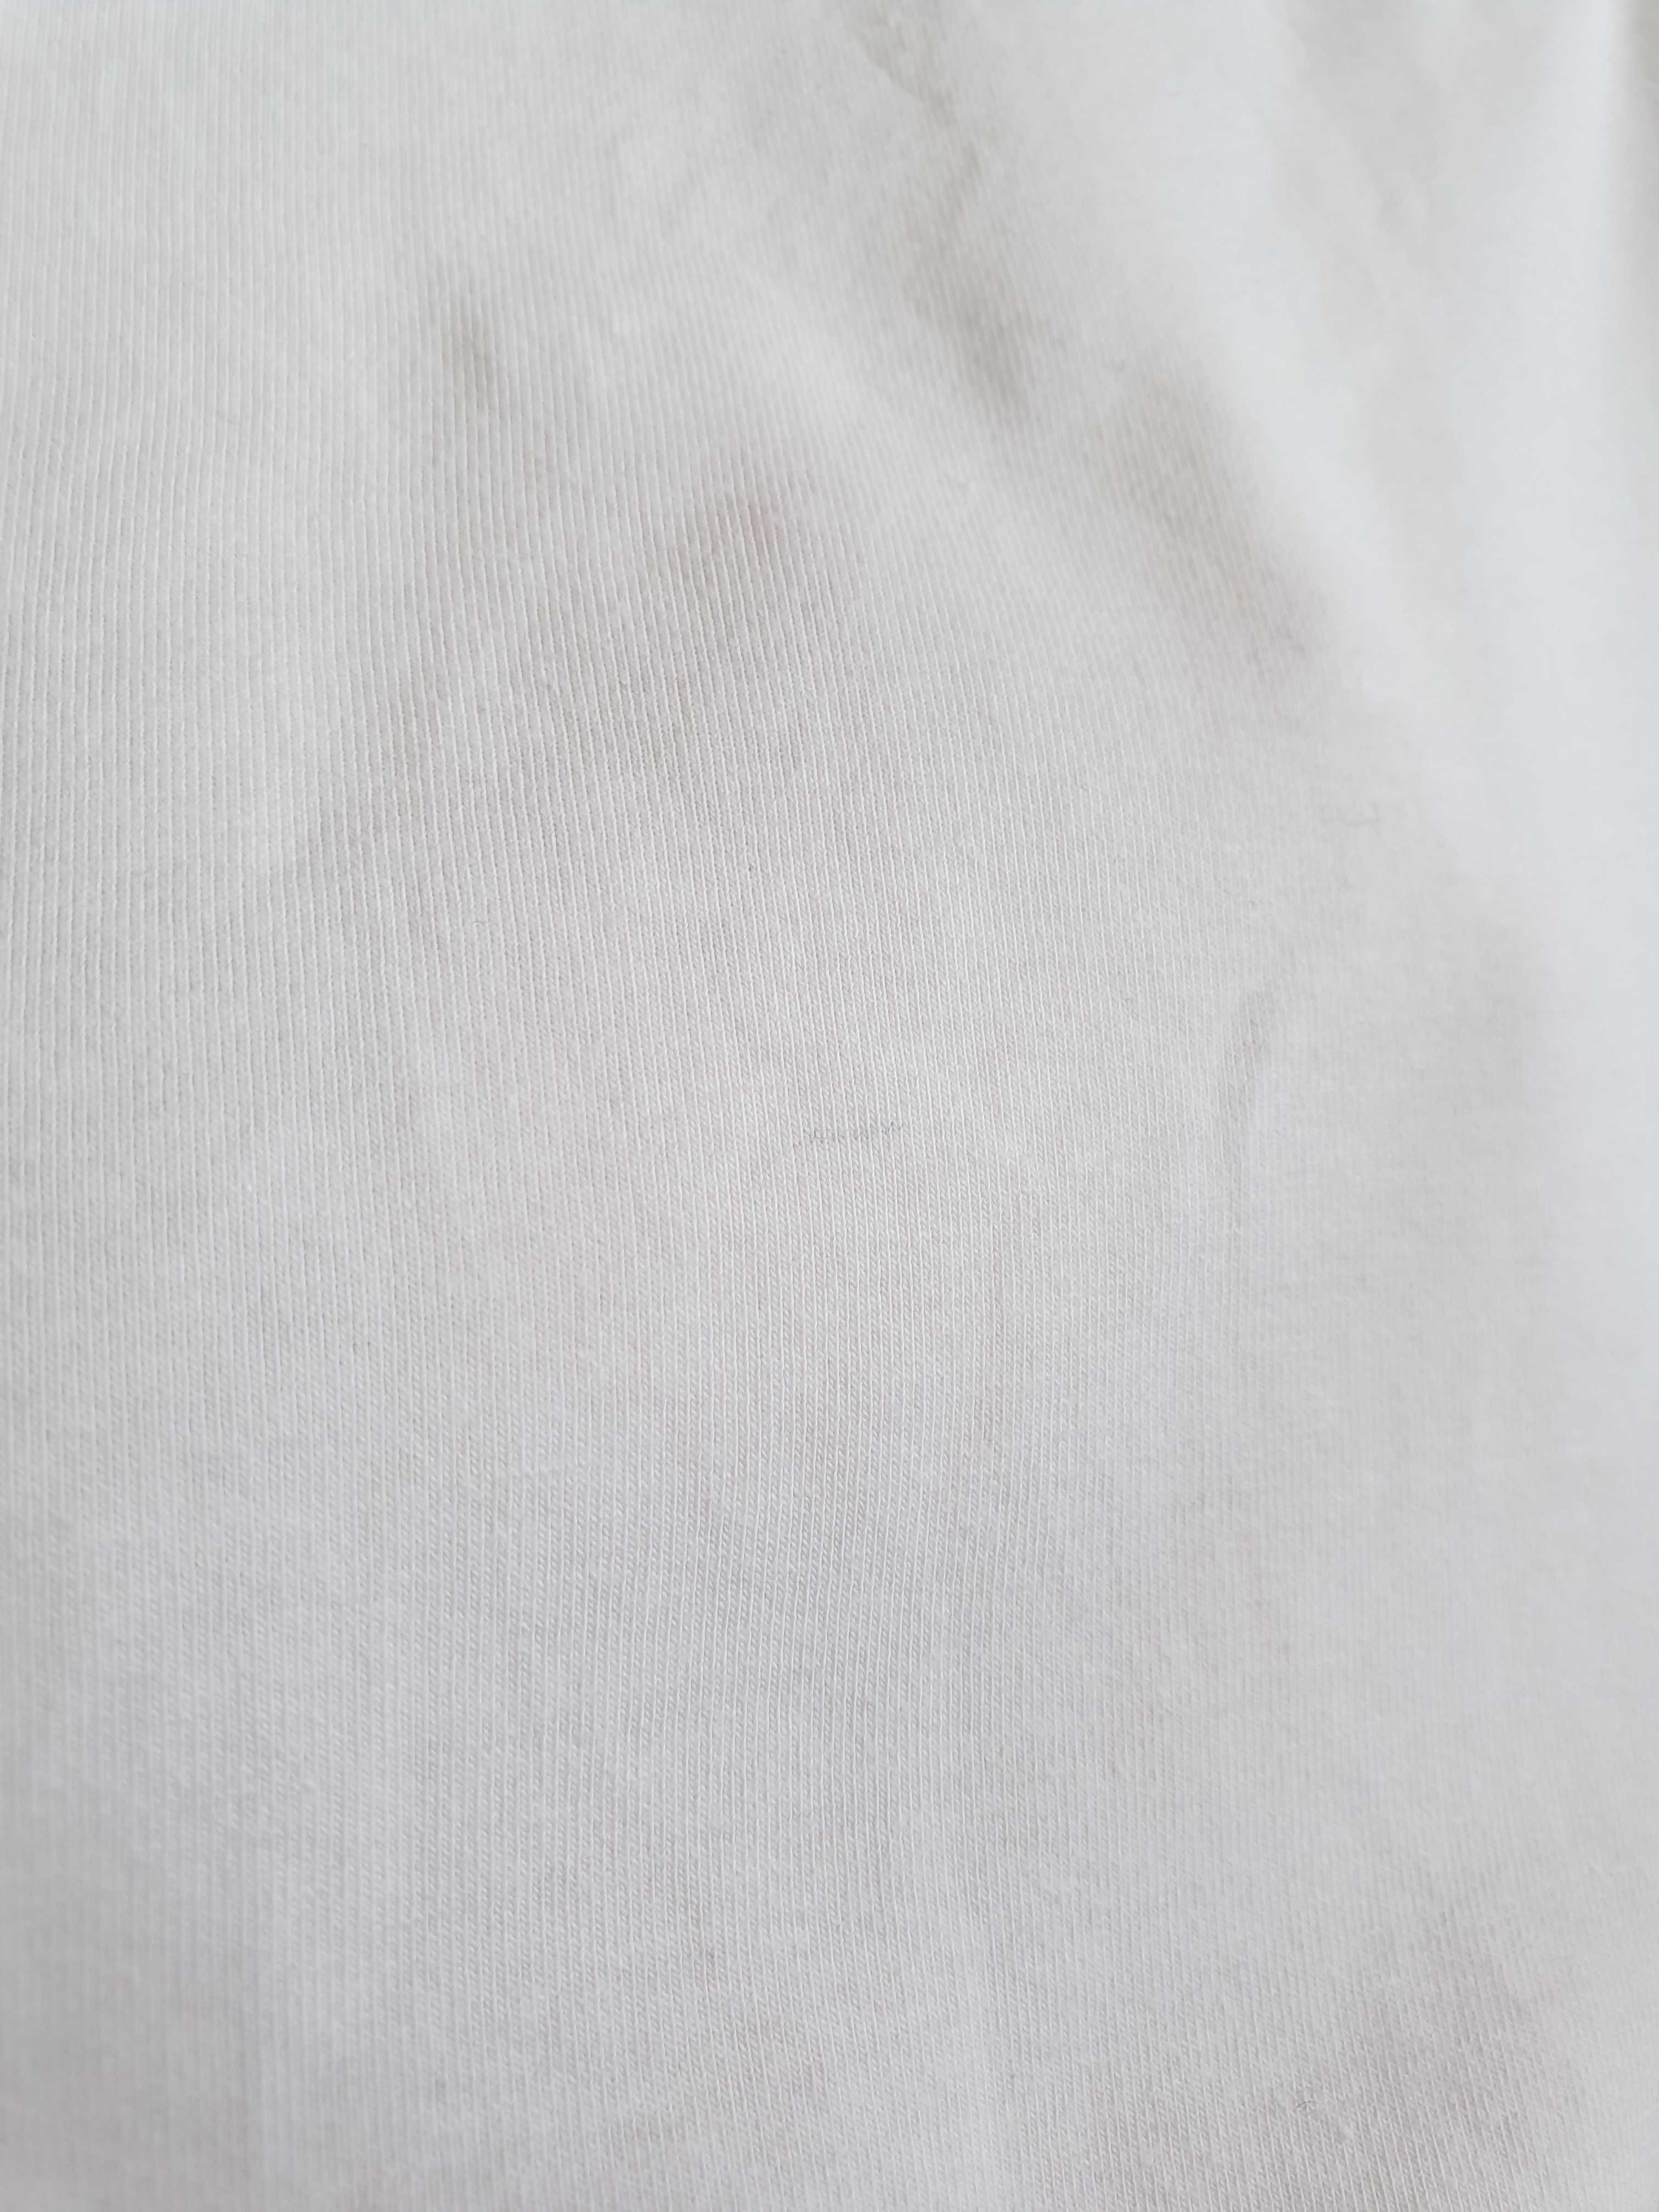 Koszulka bawełniana t-shirt H&M biała M L 38 40